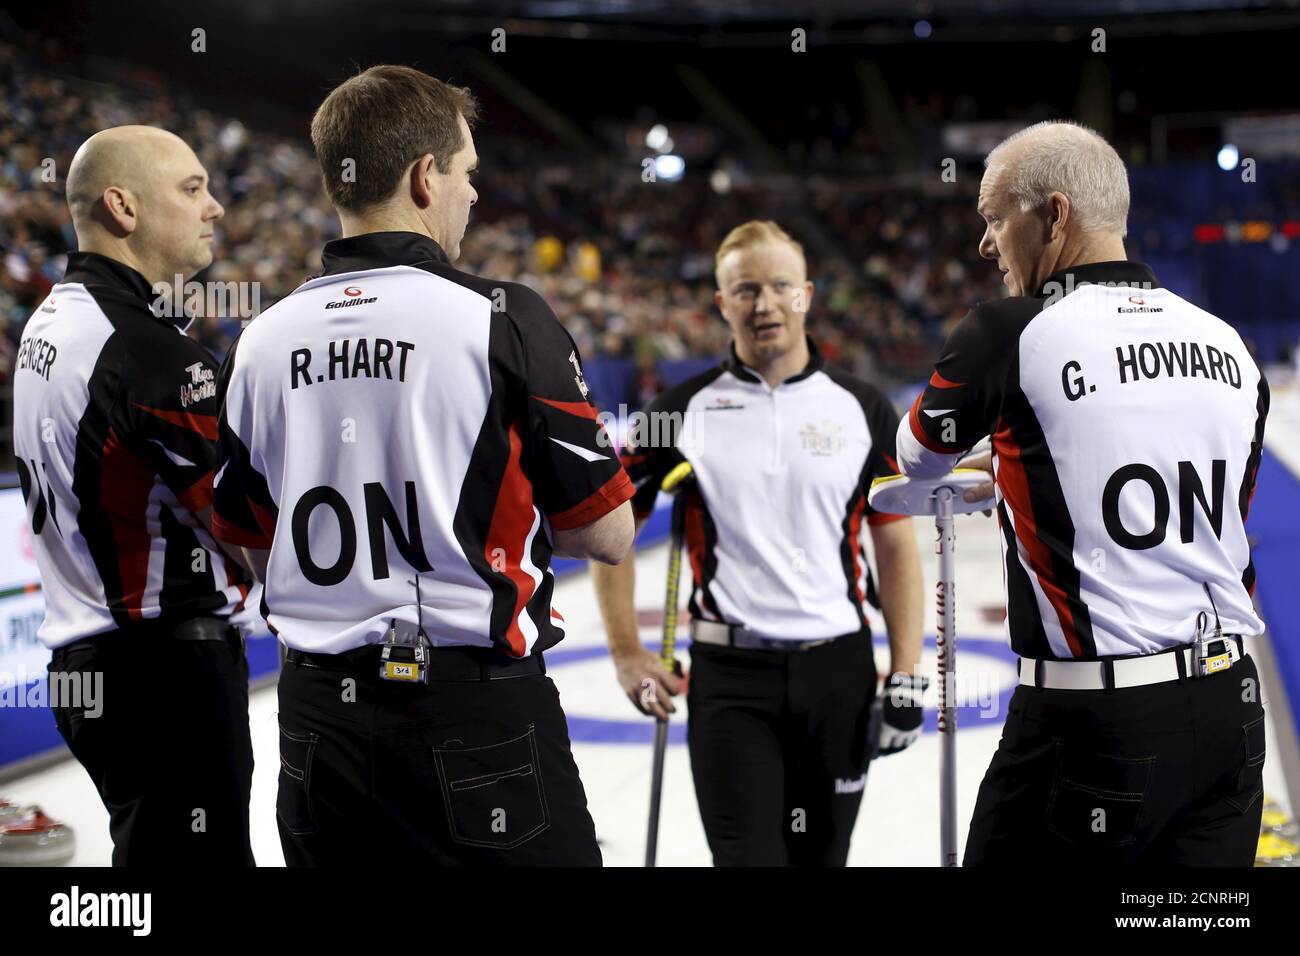 Equipo Ontario saltar Glenn Howard (R) habla con los compañeros de equipo Adam Spencer (L), Richard Hart (2o L) y Scott Howard durante su sorteo contra el Equipo Territorios del Noroeste en el campeonato Brier Curling en Ottawa, Canadá, 8 de marzo de 2016. REUTERS/Chris Wattie Foto de stock